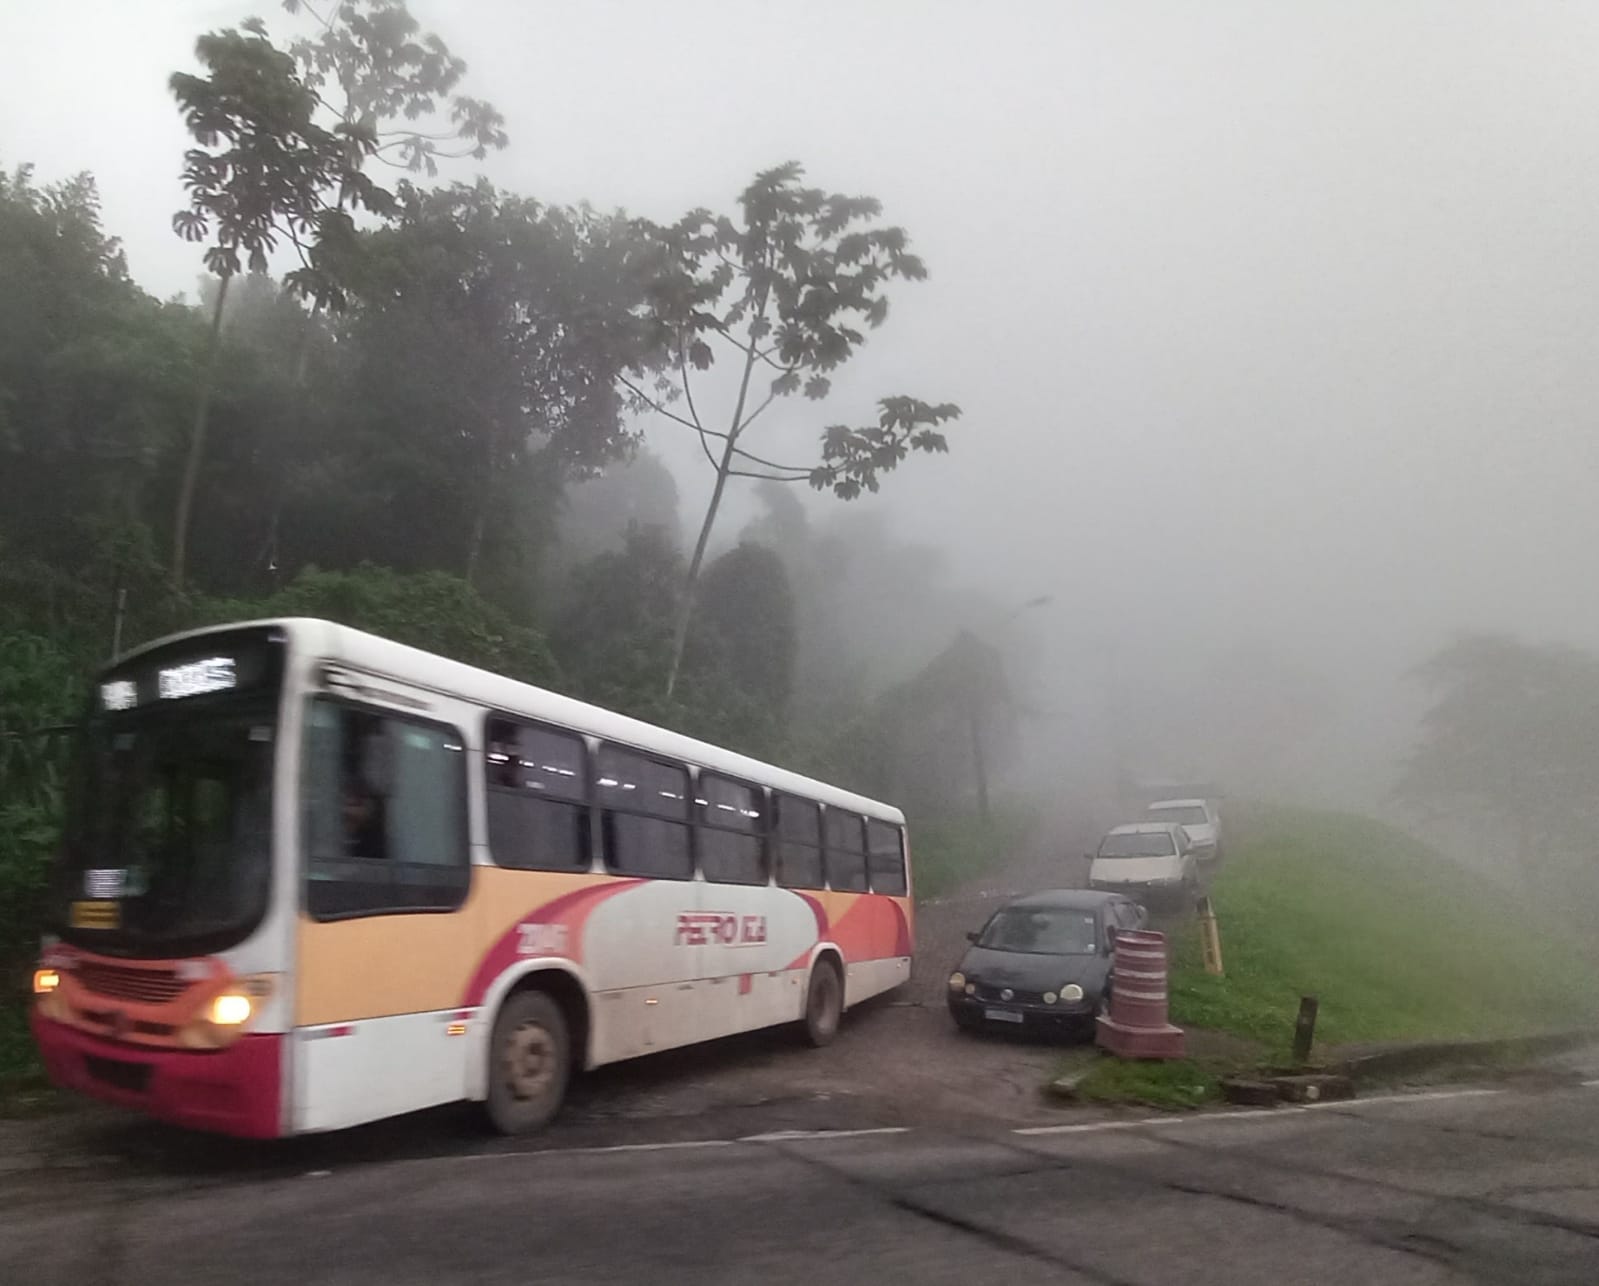 Nevoeiro em Petrópolis